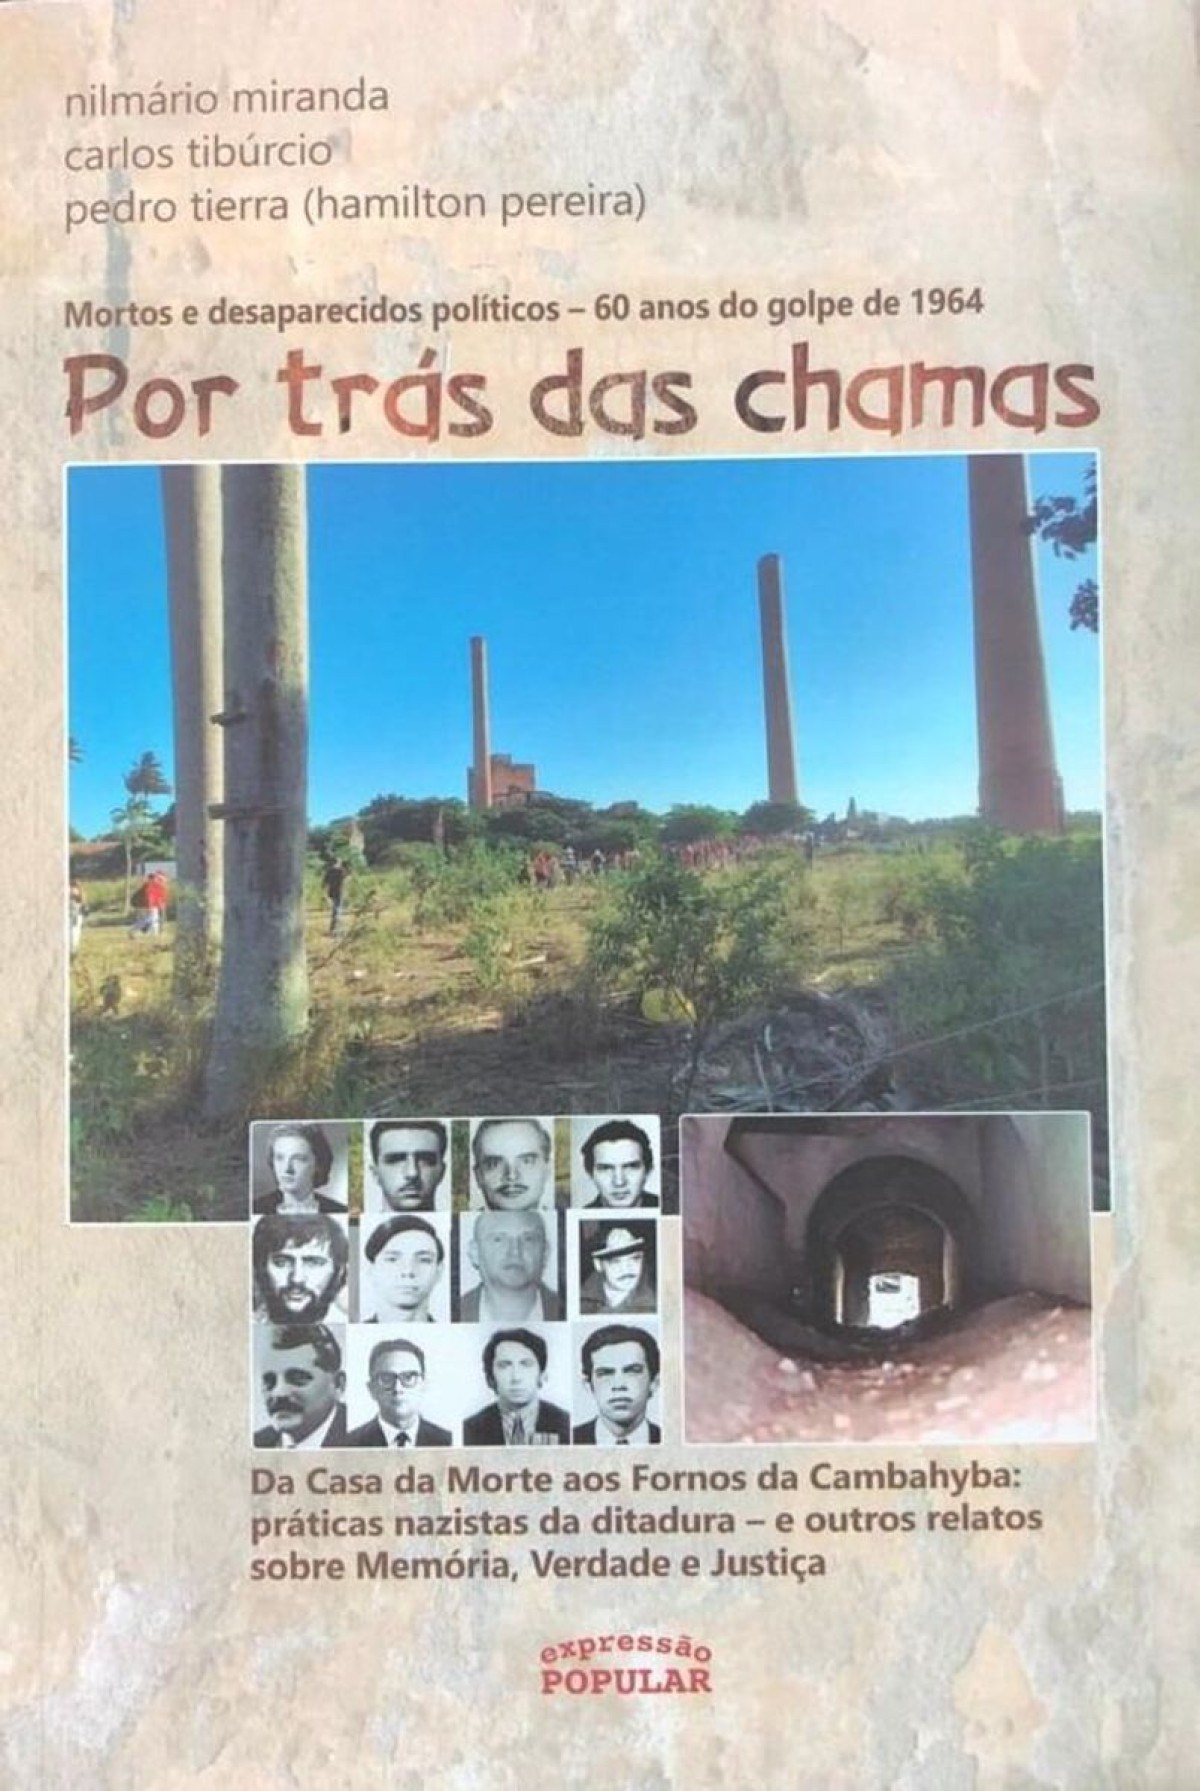 Ex-presos políticos da ditadura militar lançam livro sobre o regime 